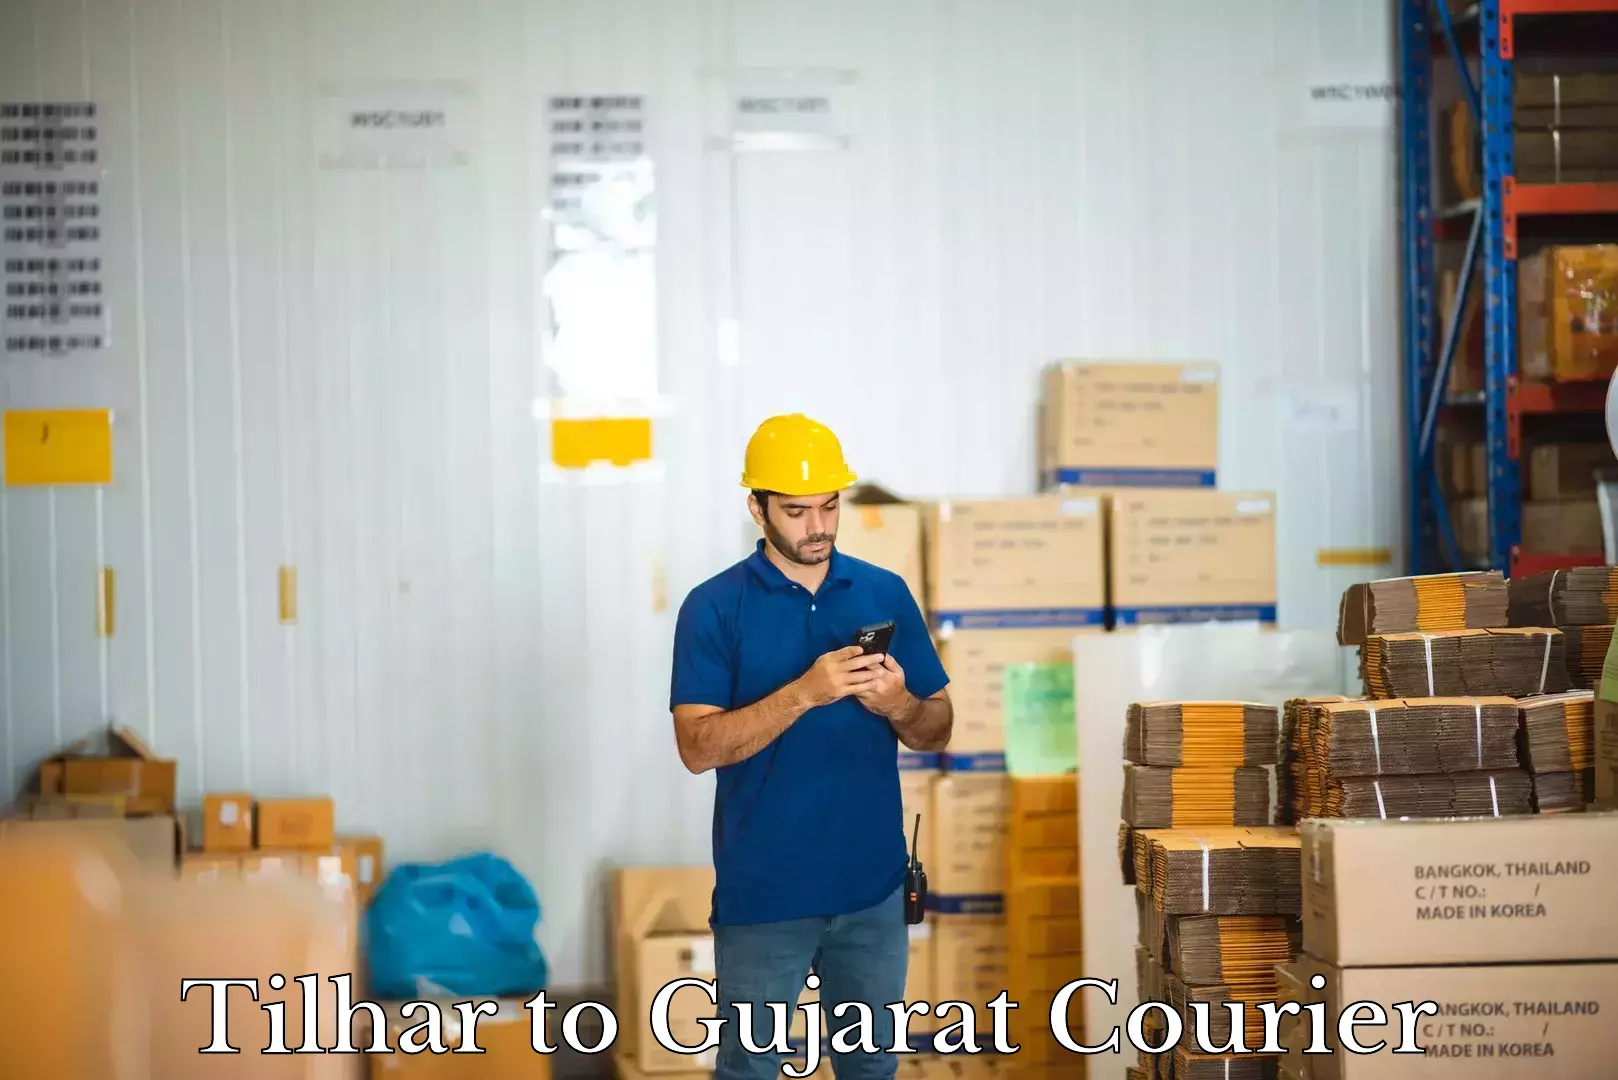 Baggage transport technology Tilhar to Gujarat